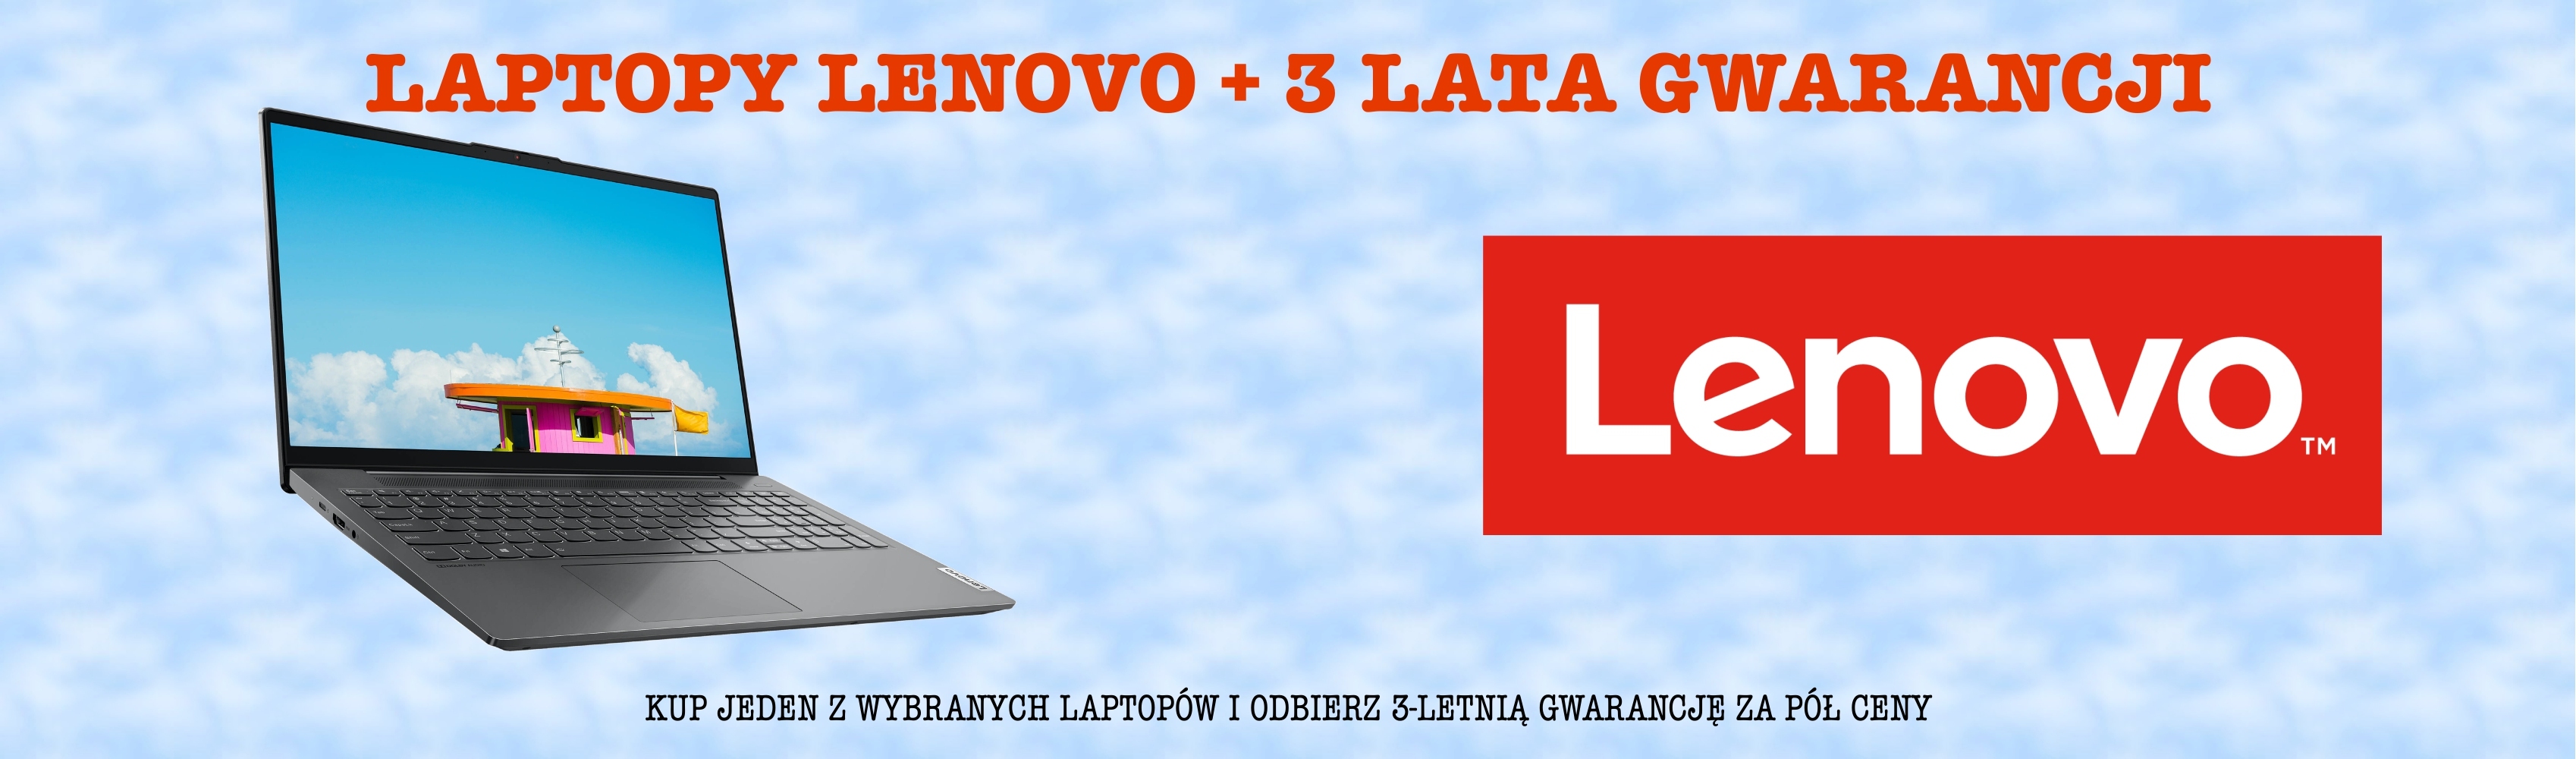 Lenovo | 3 lata gwarancji za pół ceny